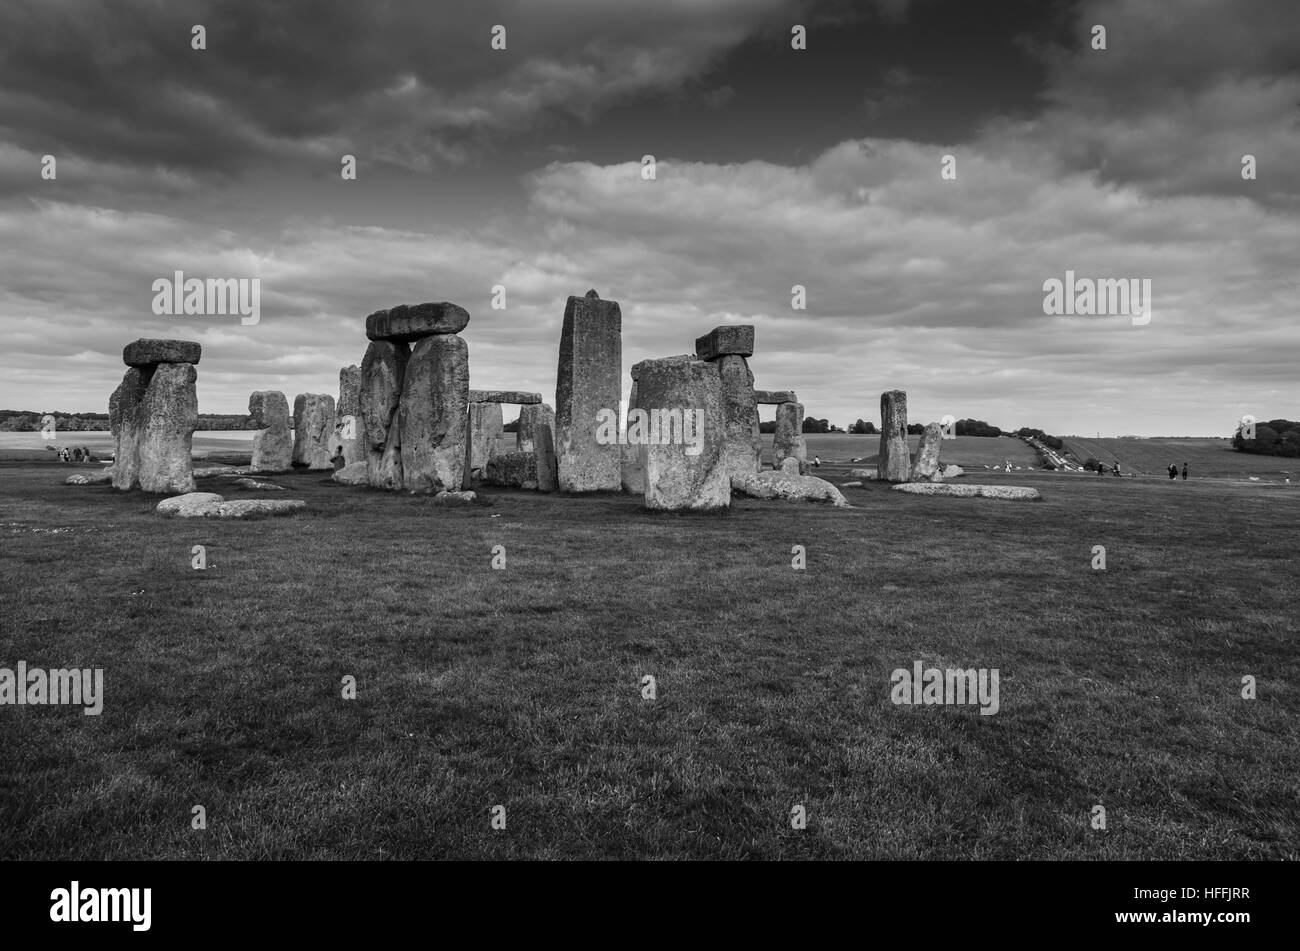 Stonehenge sous un ciel dramatique en noir et blanc, Salisbury, Angleterre Banque D'Images